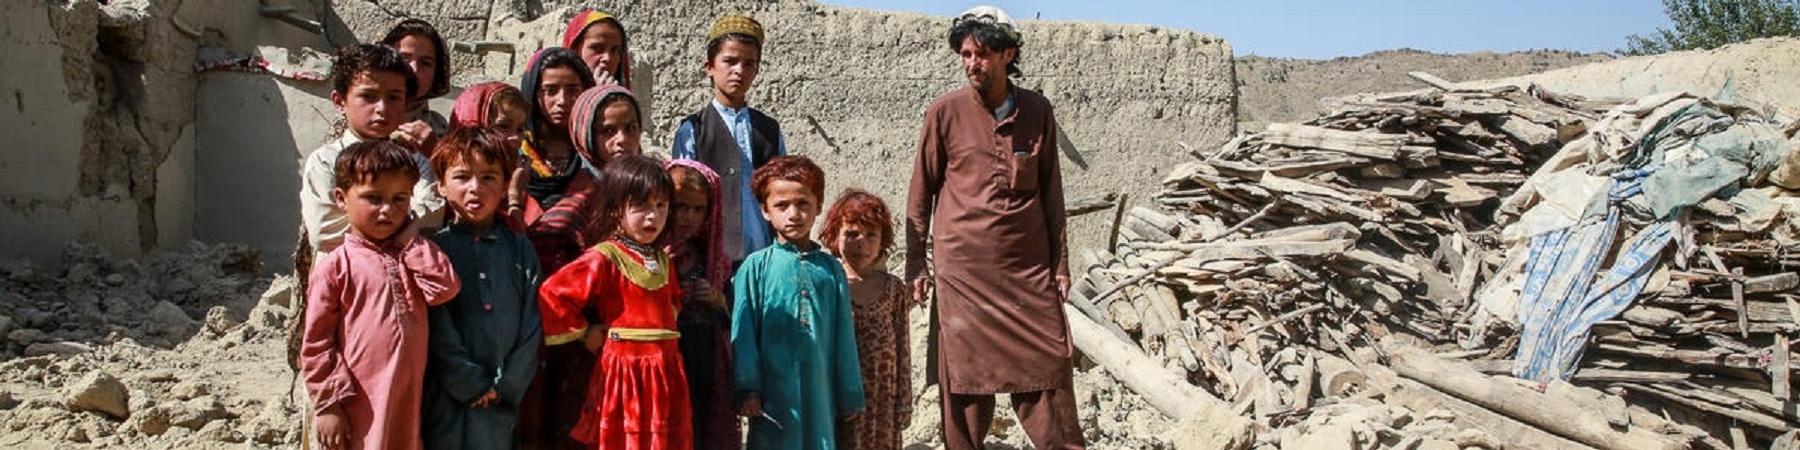 Bambine e bambini con accanto uno zio in mezzo ai detriti della loro casa distrutta dal terremoto in Afghanistan